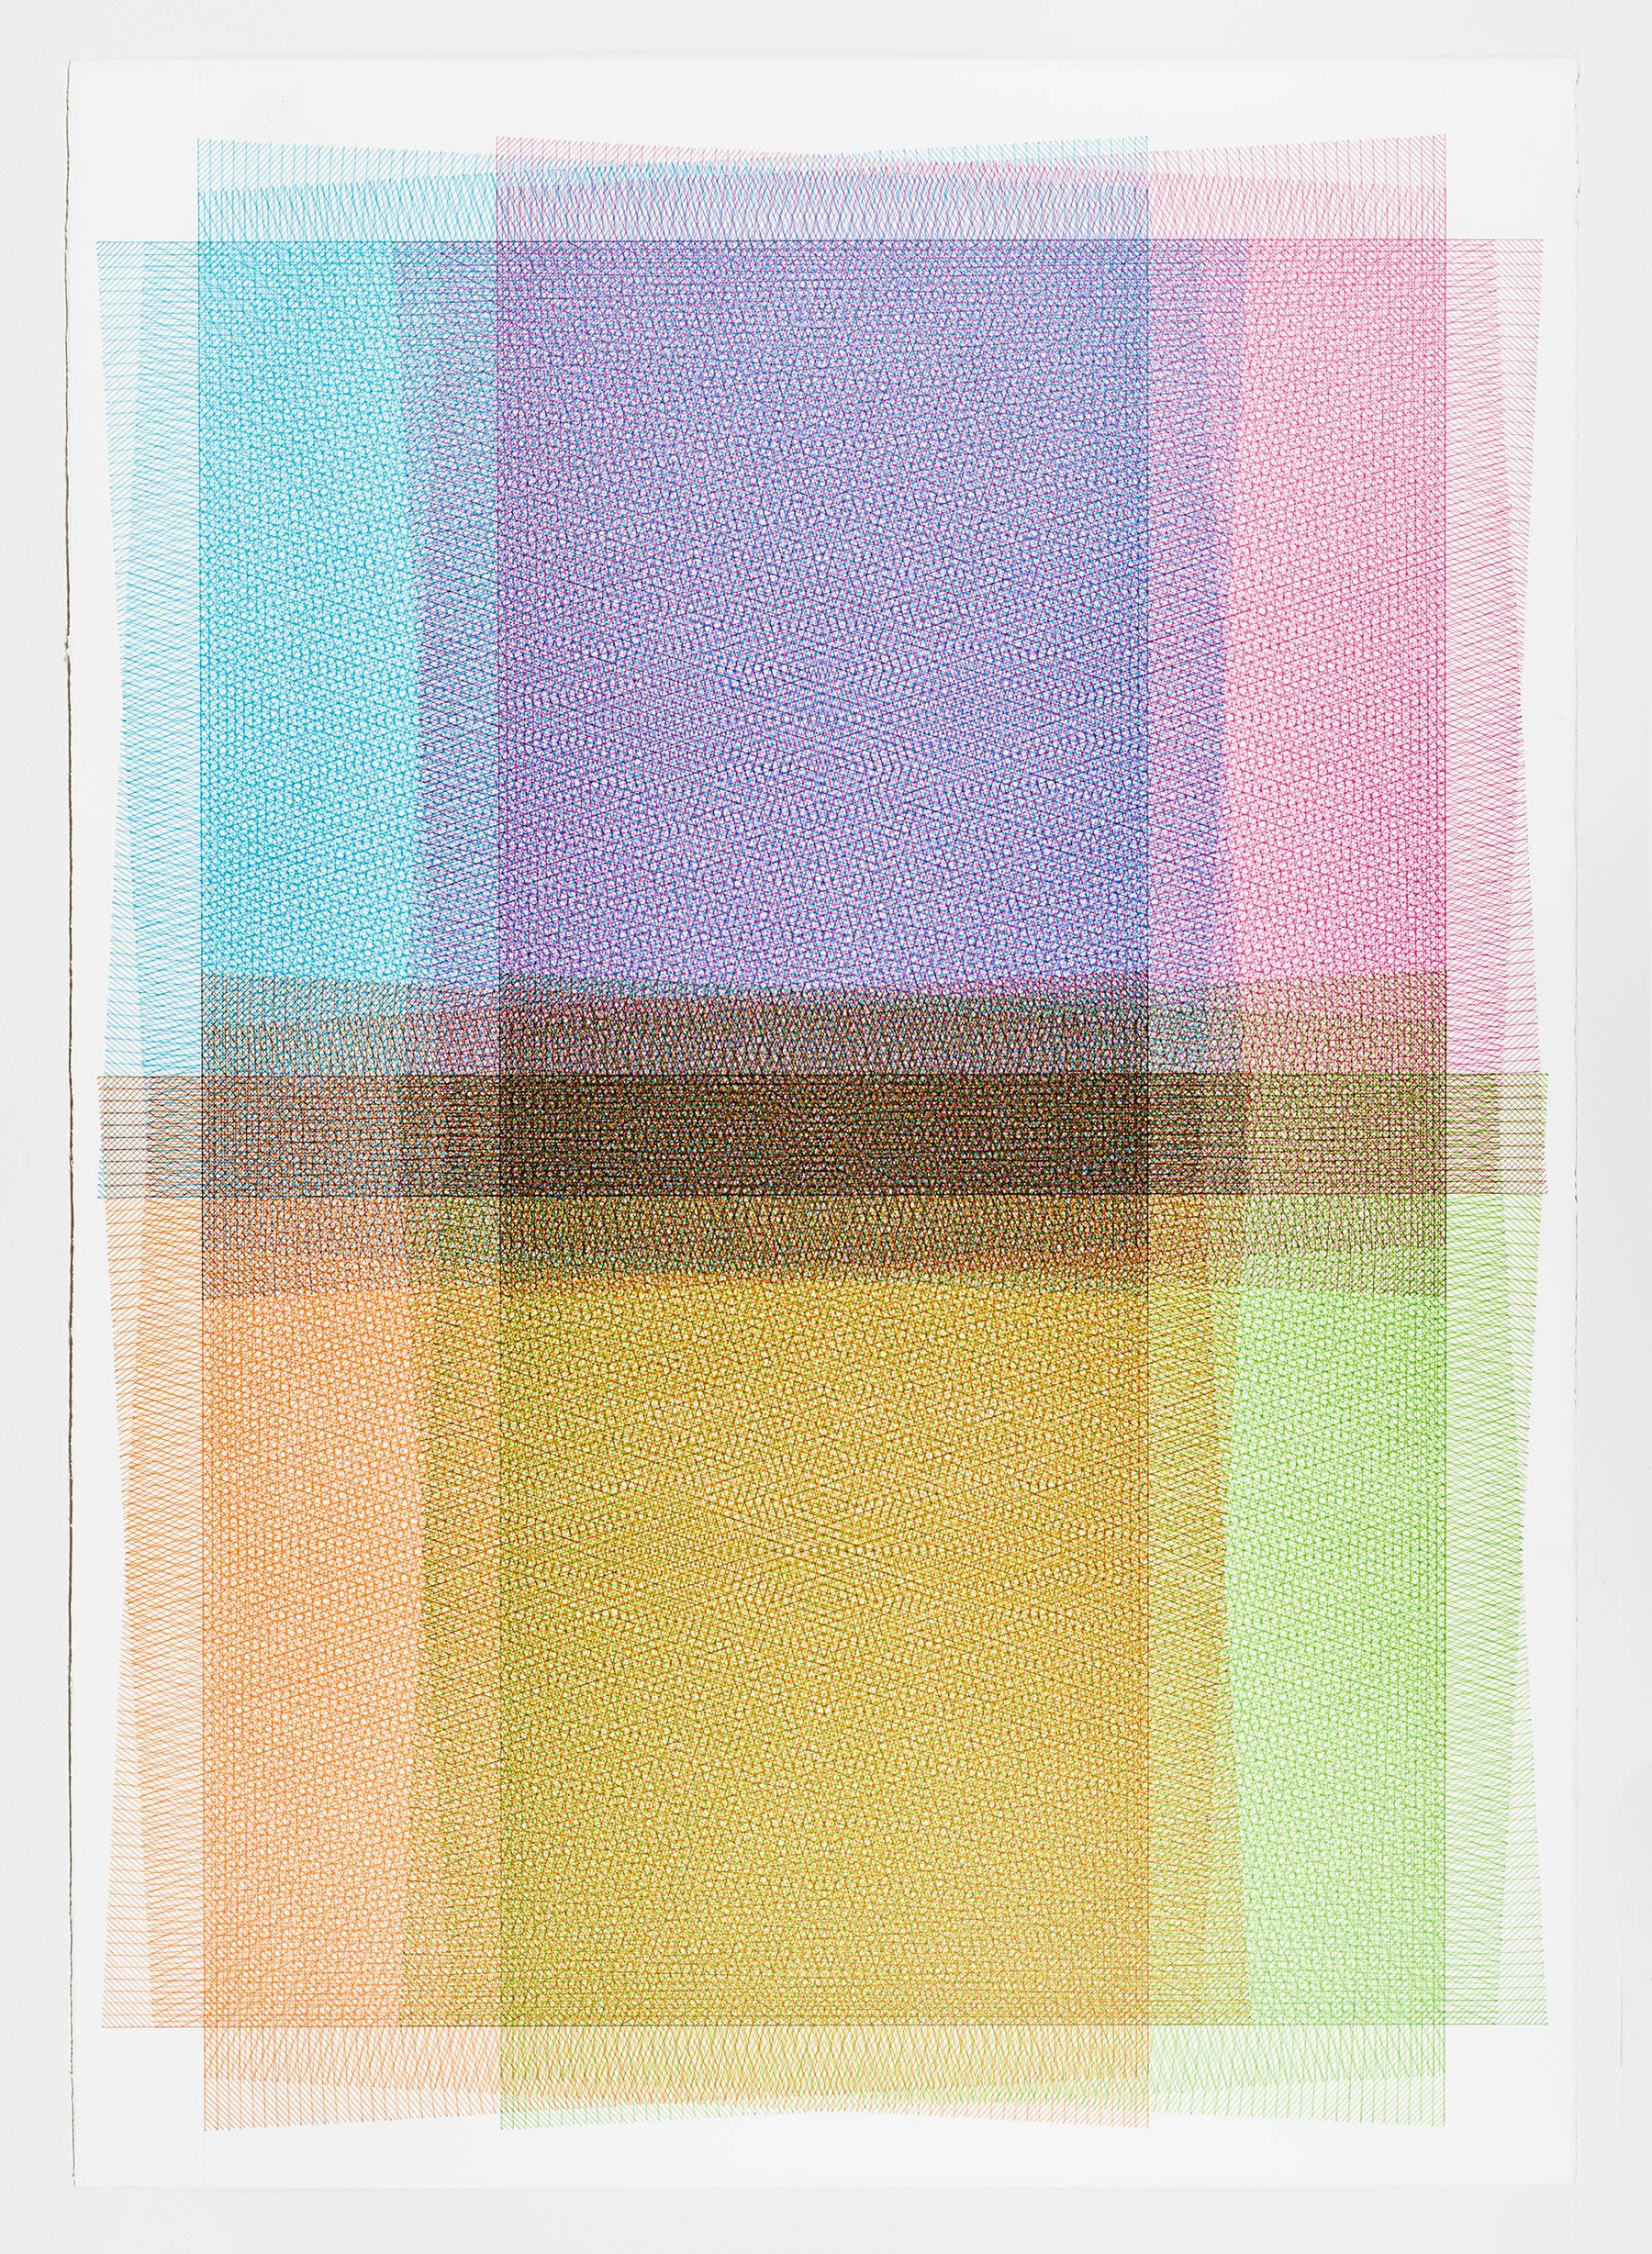 Sara Eichner, 32 Lagen, 4 Farben, 2017, Minimalistische Abstraktion,  Tinte